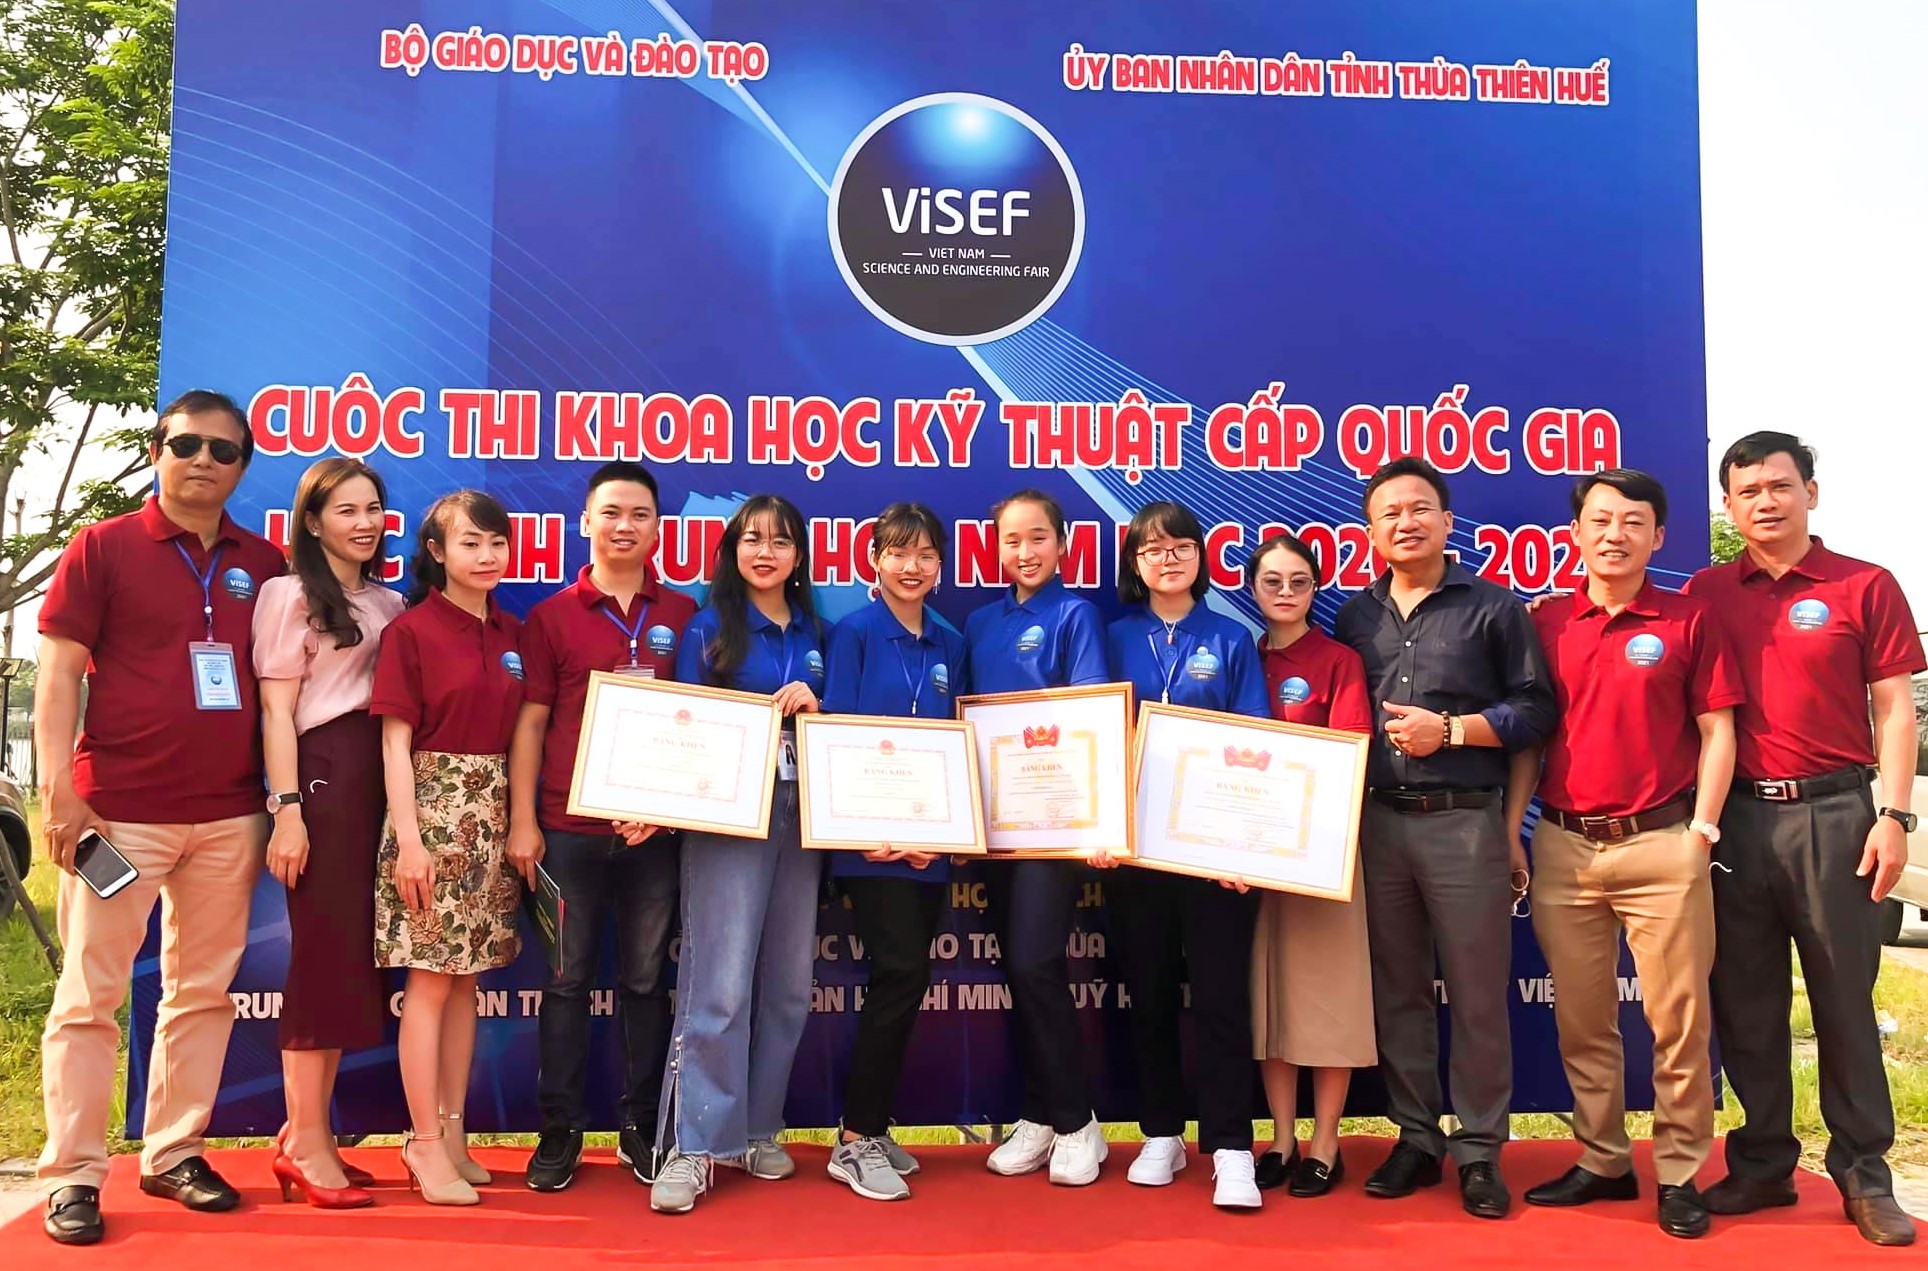 Trường THCS Nguyễn Du-Đà Lạt, nơi nuôi dưỡng đam mê nghiên cứu khoa học kỹ thuật cho học sinh